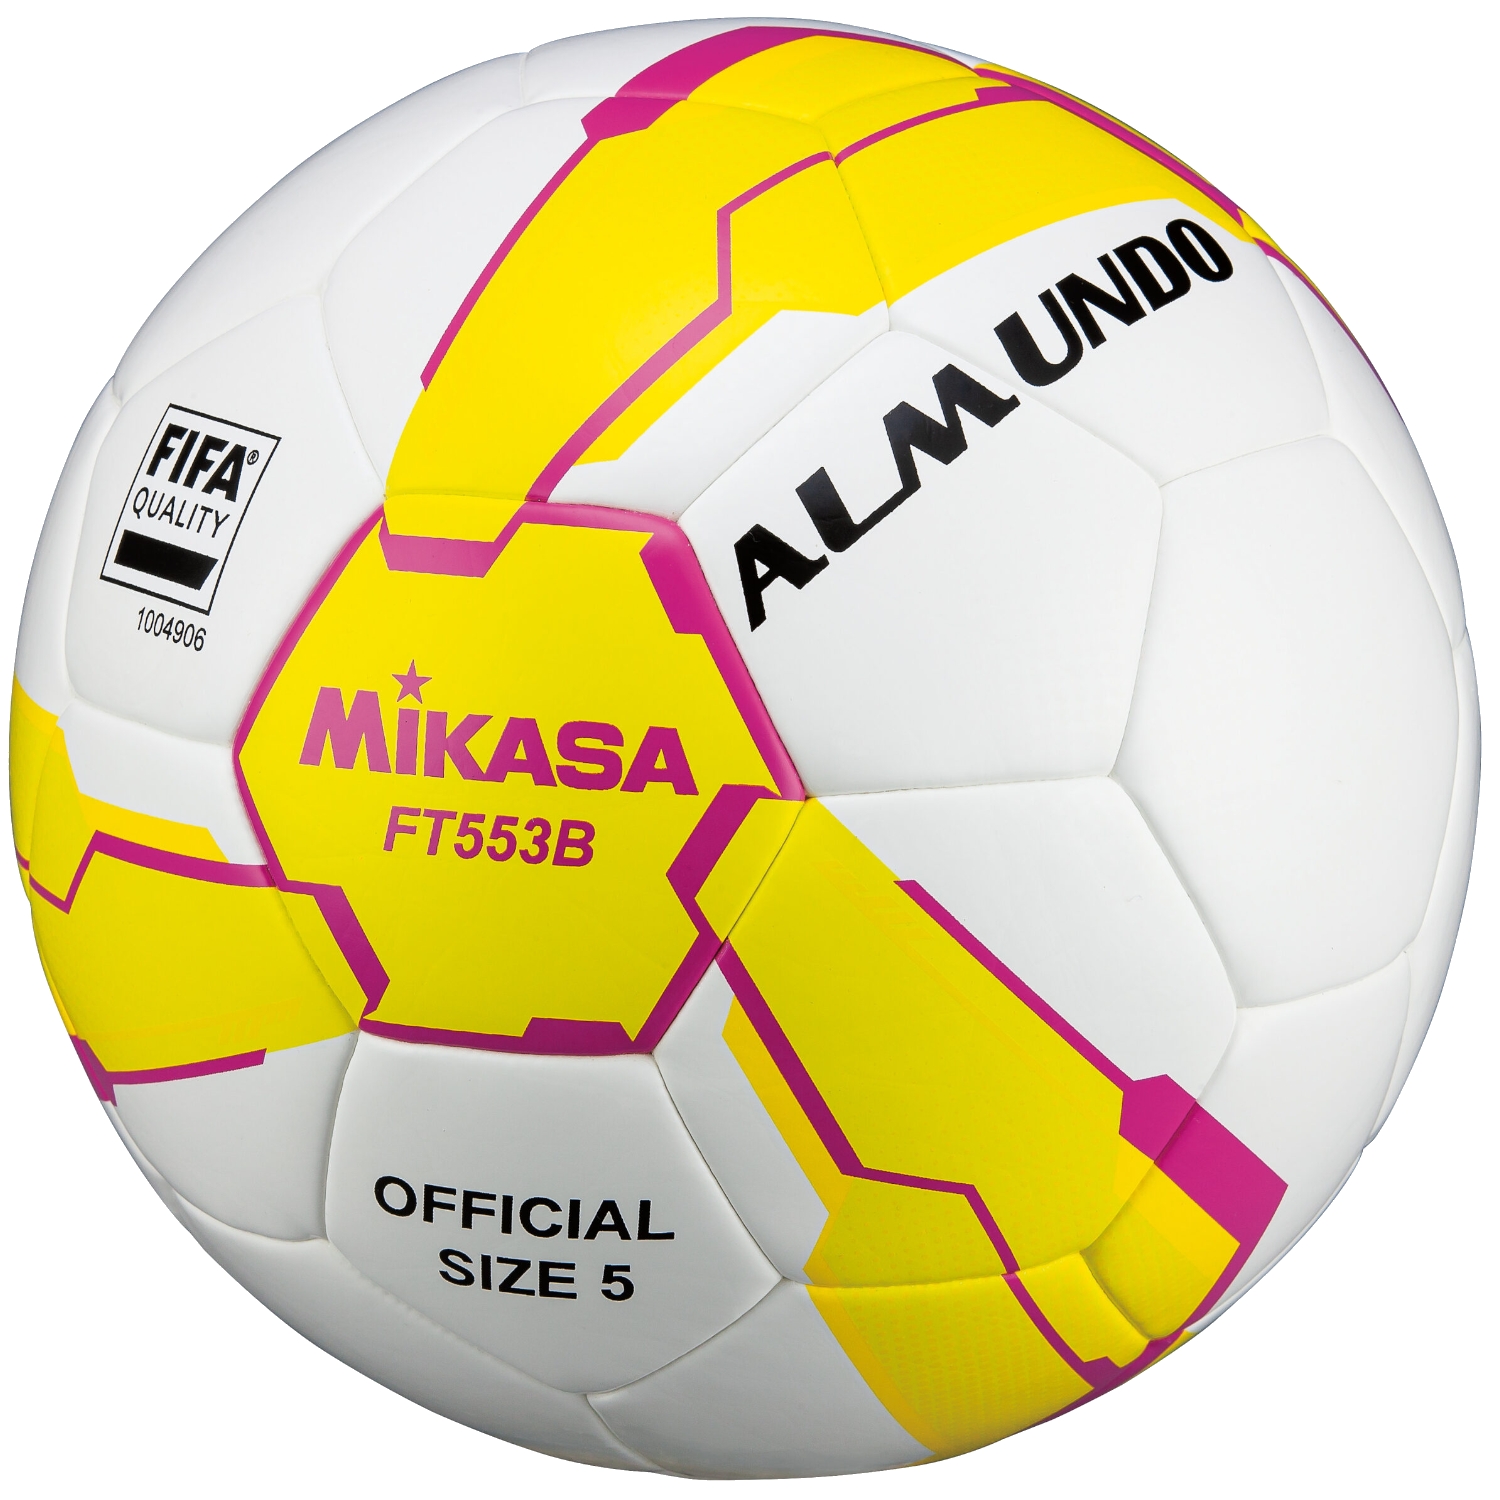 Fotbalový míč Mikasa FT553B-YP FIFA Quality FT553B - 5